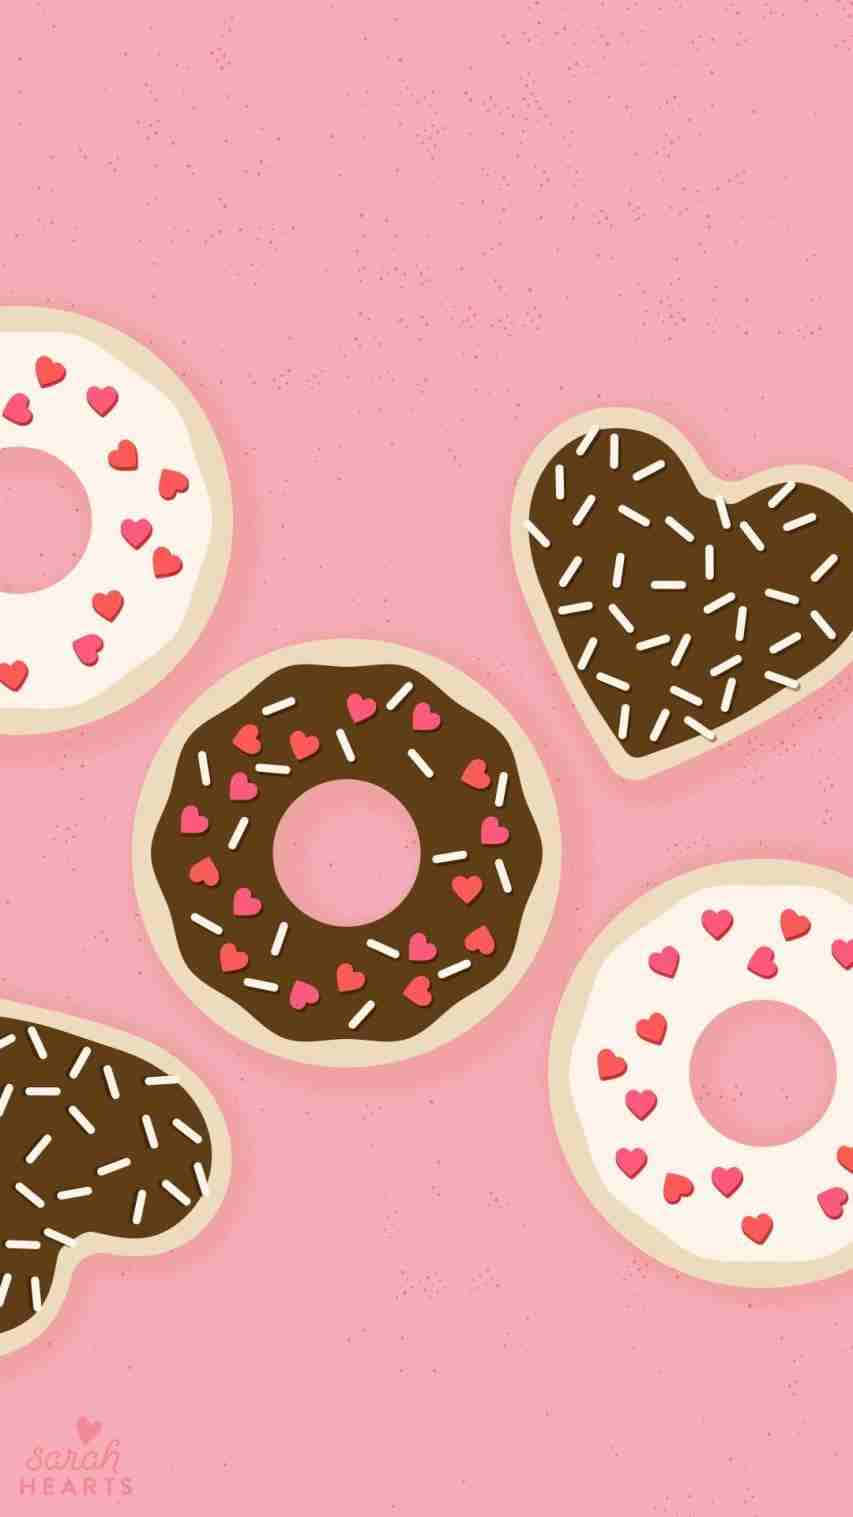 Imagensde Donuts